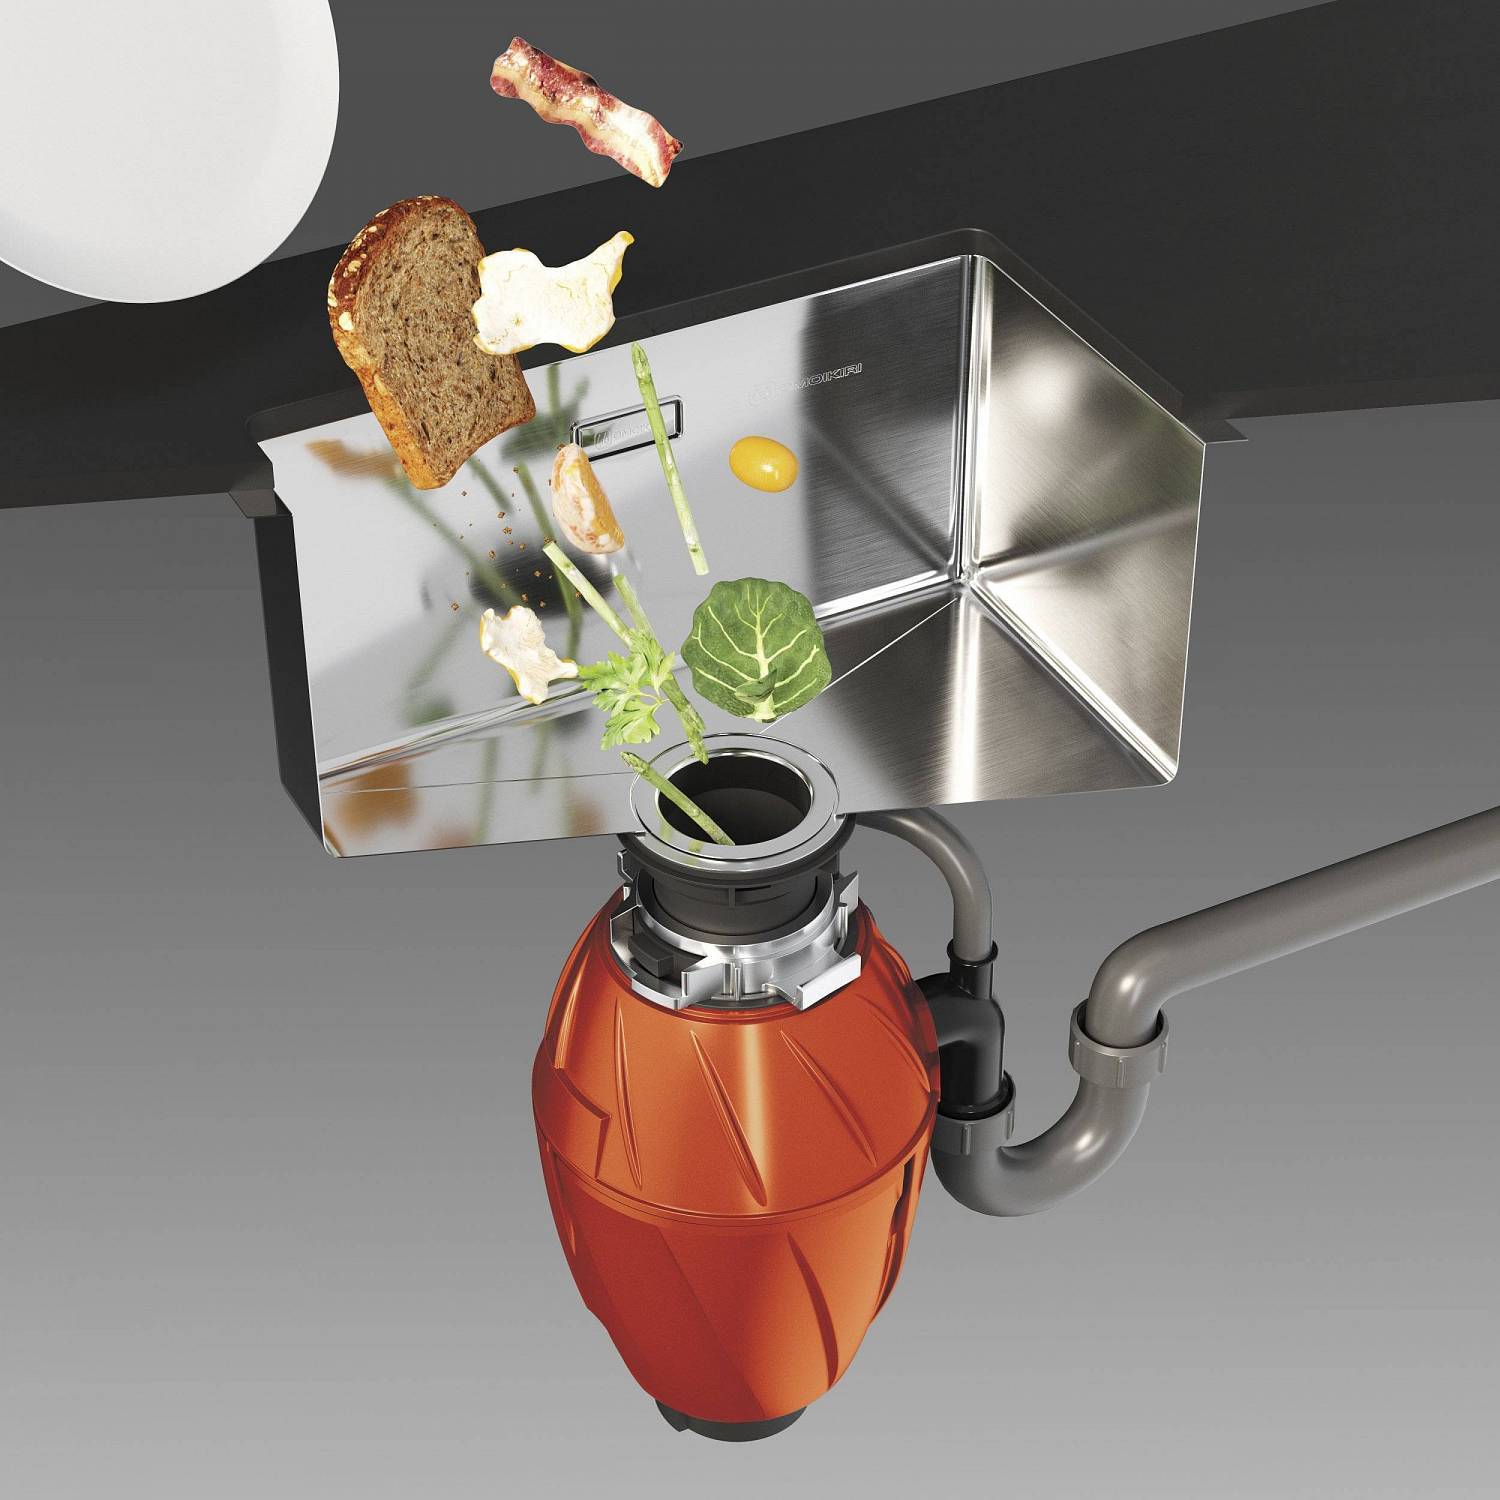 Как выбрать измельчитель пищевых отходов для кухонной мойки? топ 5 моделей